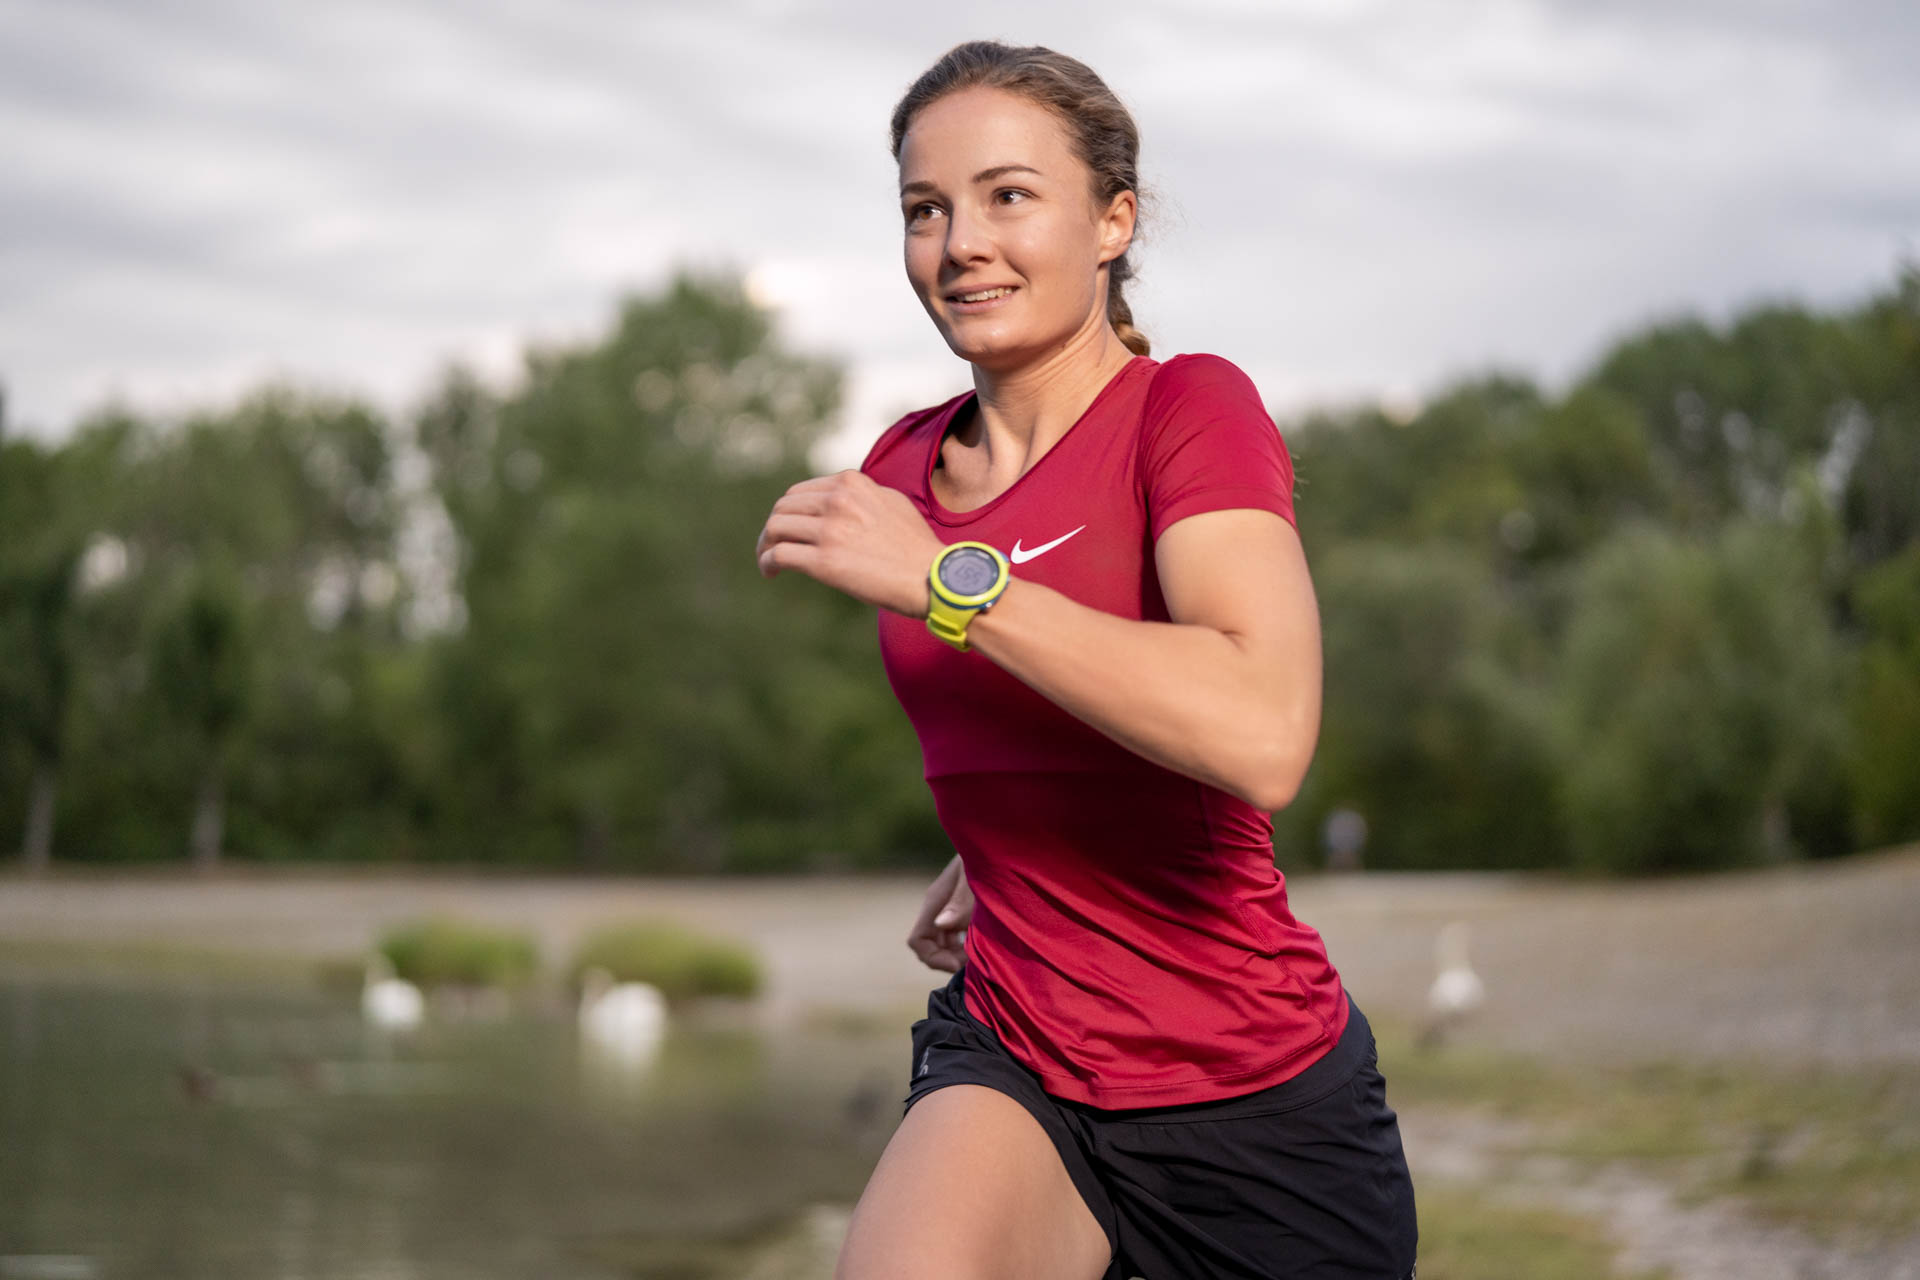 Eine Triathletin beim Laufen am Kuhsee in Augsburg - sie gibt alles, um ihre Ziele zu erreichen.